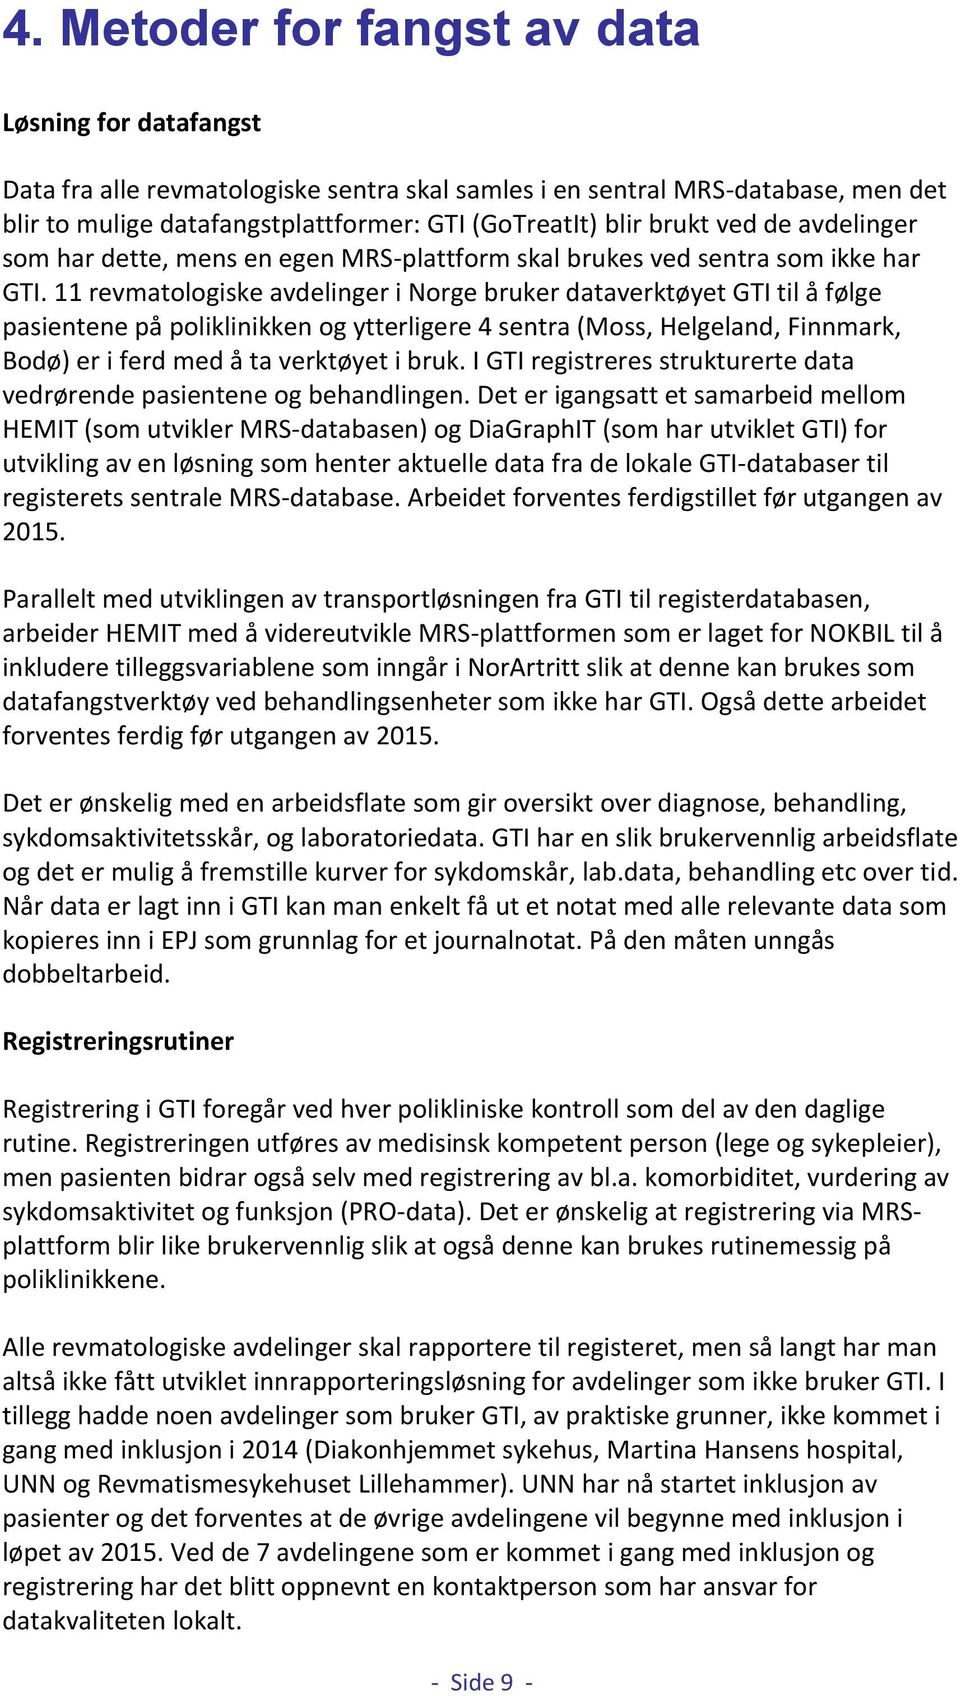 11 revmatologiske avdelinger i Norge bruker dataverktøyet GTI til å følge pasientene på poliklinikken og ytterligere 4 sentra (Moss, Helgeland, Finnmark, Bodø) er i ferd med å ta verktøyet i bruk.